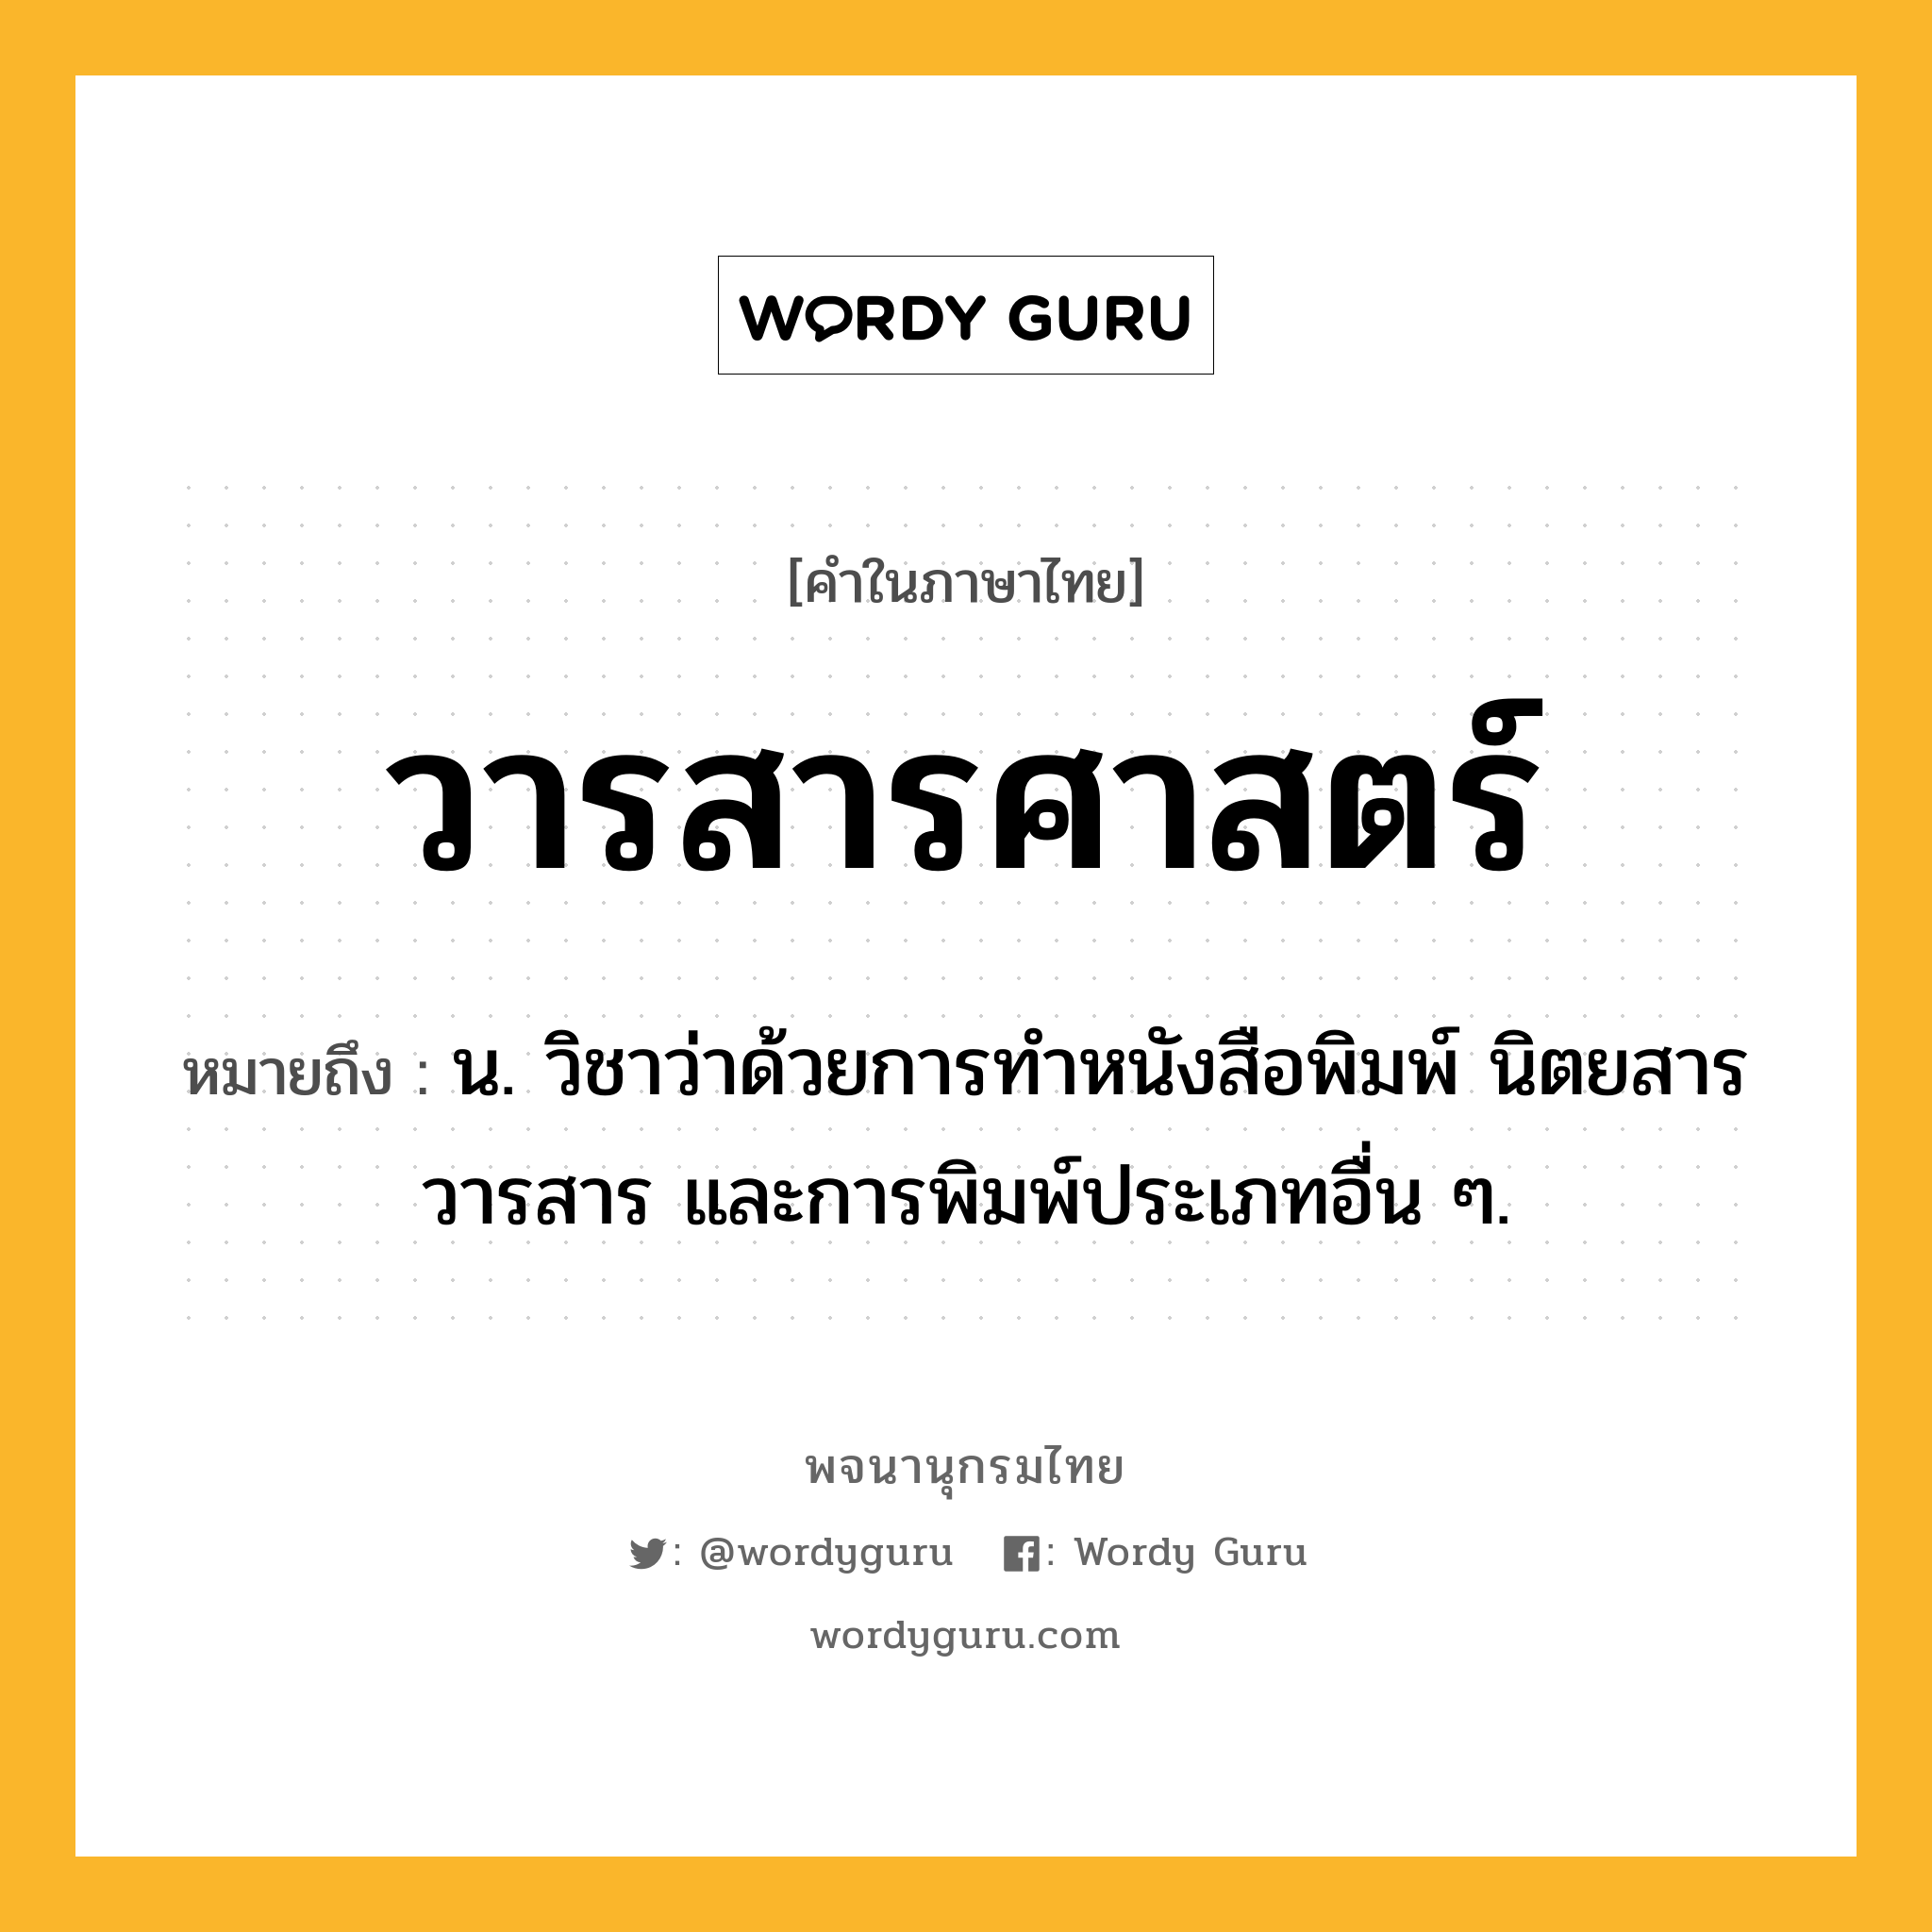 วารสารศาสตร์ ความหมาย หมายถึงอะไร?, คำในภาษาไทย วารสารศาสตร์ หมายถึง น. วิชาว่าด้วยการทําหนังสือพิมพ์ นิตยสาร วารสาร และการพิมพ์ประเภทอื่น ๆ.